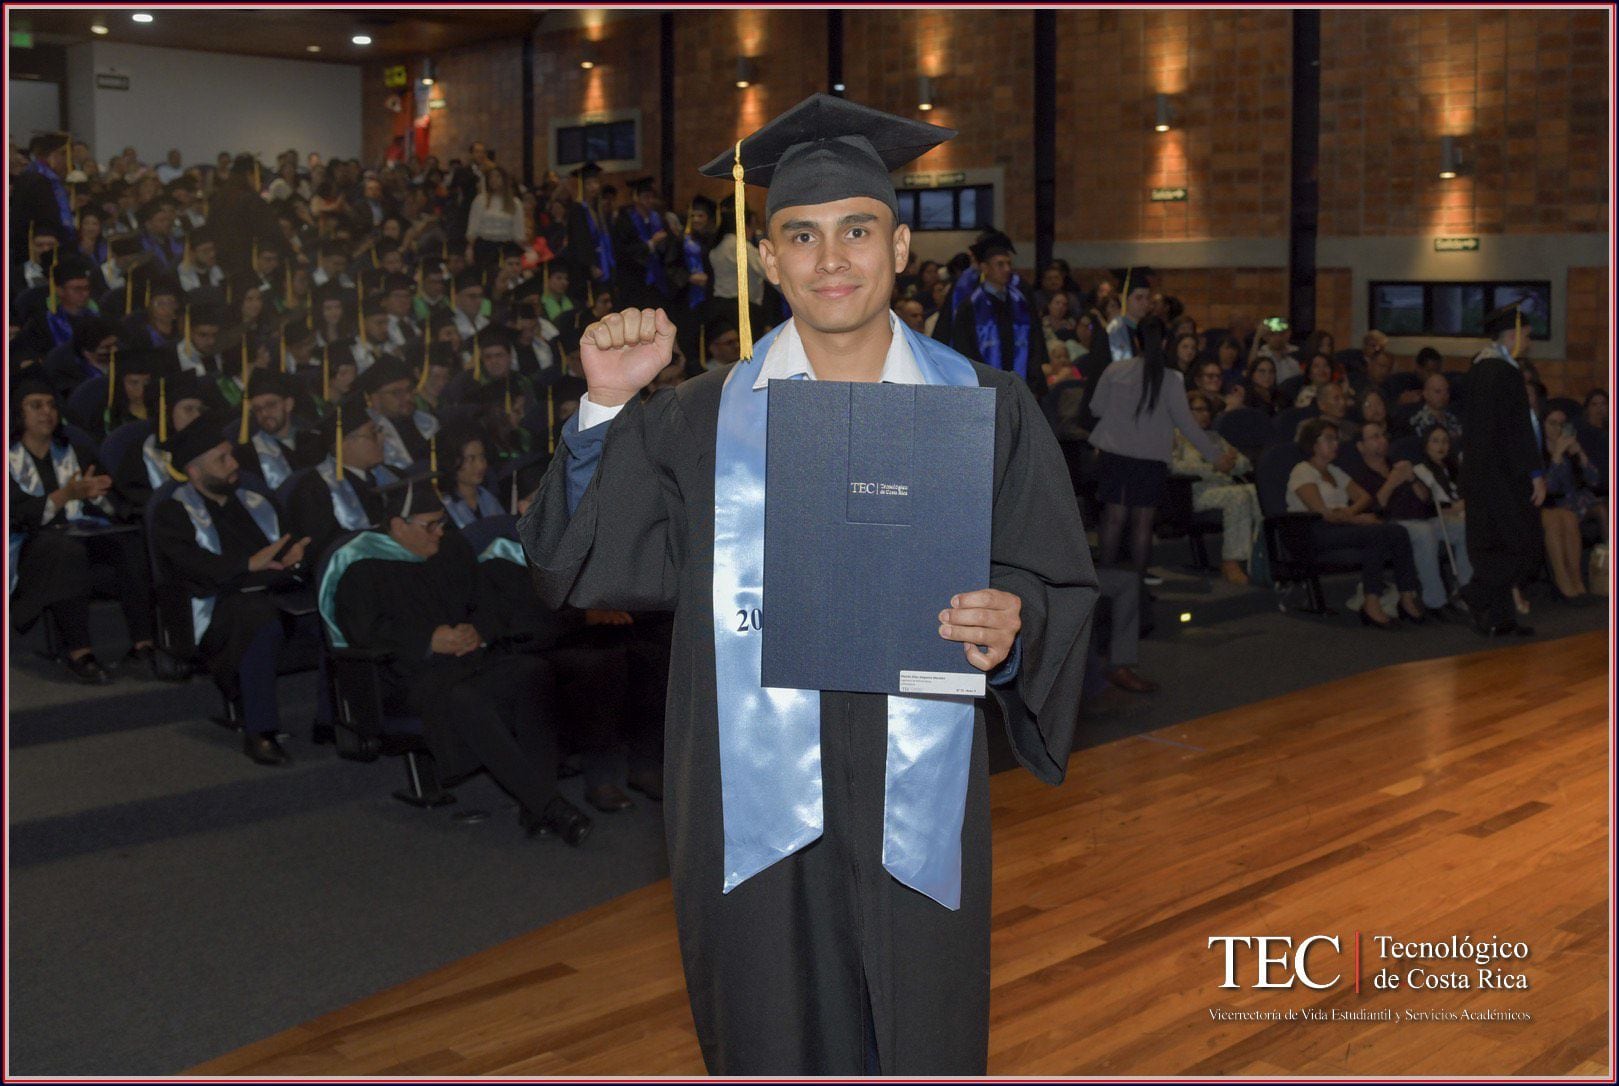 Moisés Salguero Morales se graduó el 21 de junio del Tec. Cuenta que es el segundo indígena obtener un título como ingeniero en Mecatrónica en Costa Rica.  Foto: Moisés Morales para LN